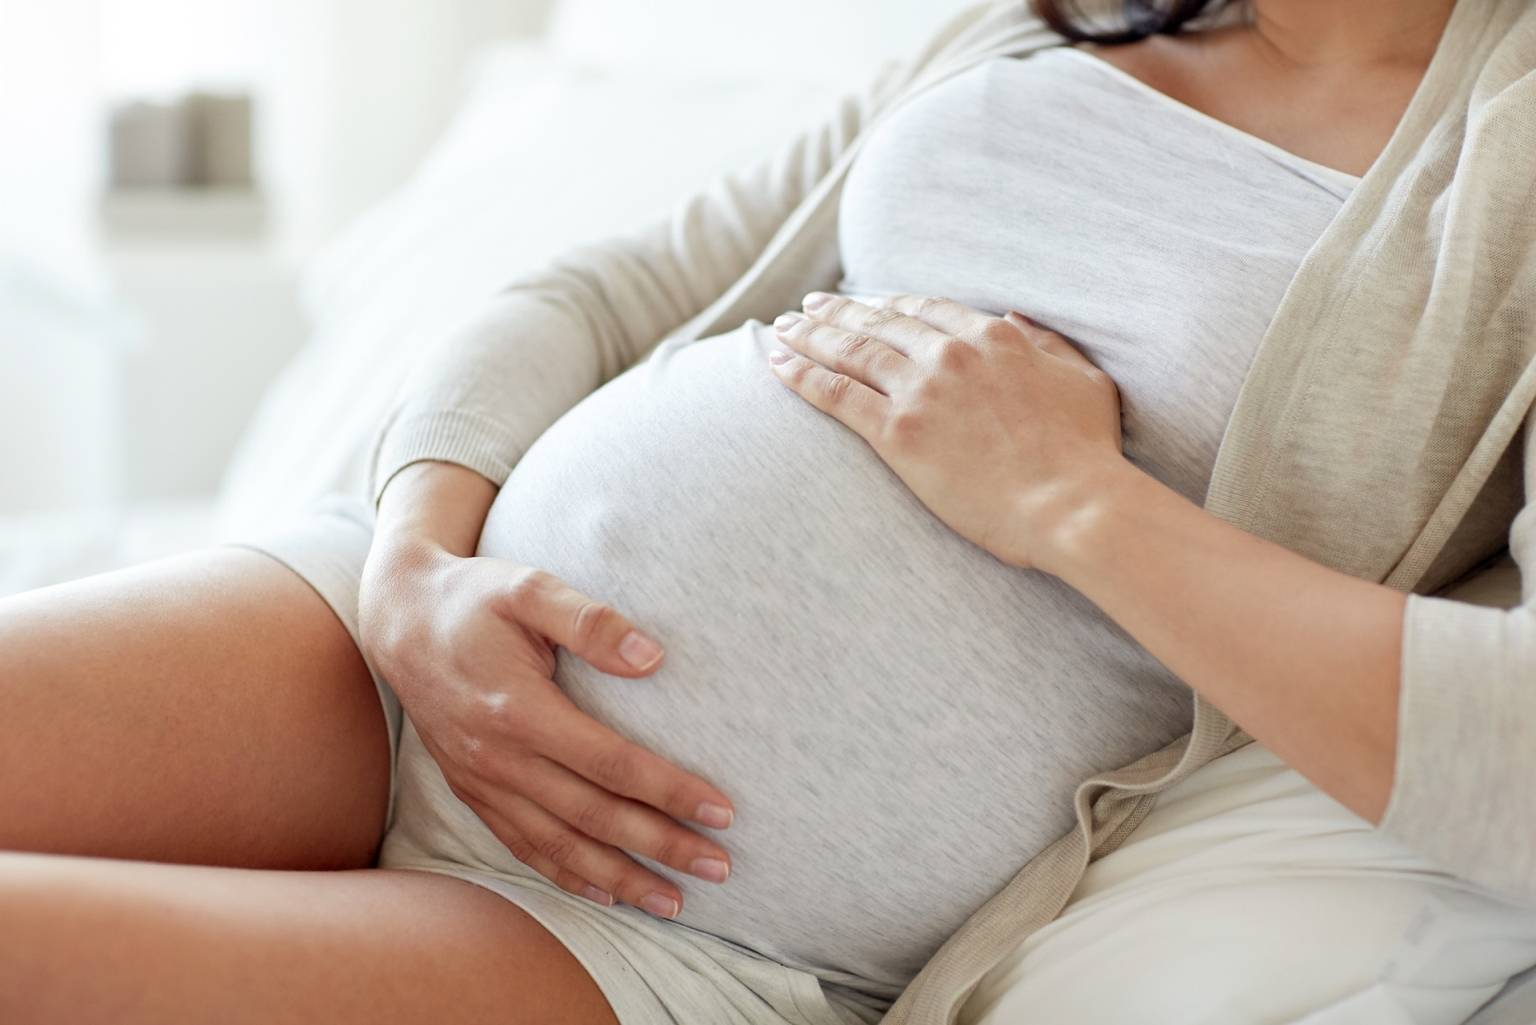 Leczenie niepłodności w medycynie chińskiej. Kobieta w zaawansowanej ciąży w szarej bluzce, narzutce i krótkich spodenkach siedzi na kanapie i trzyma się za brzuch. 